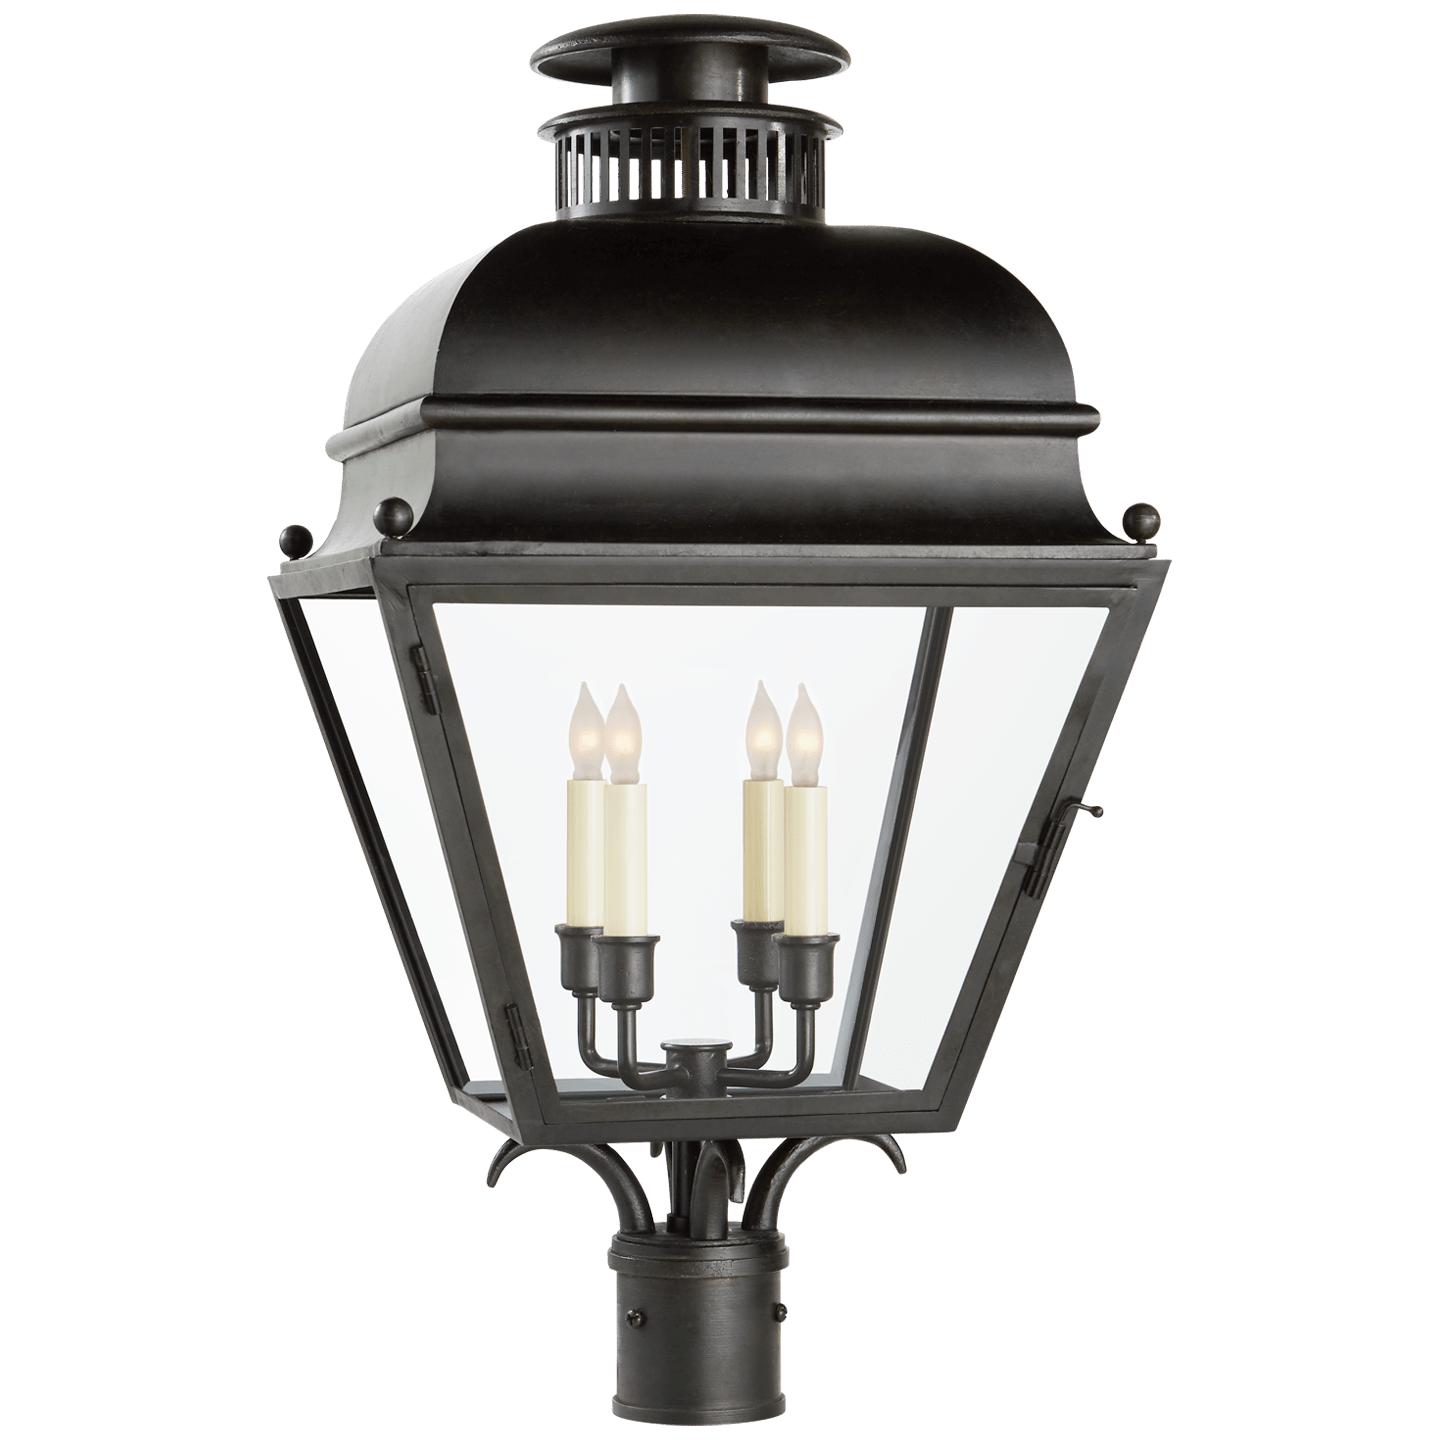 Купить Уличный фонарь Holborn Medium Post Light в интернет-магазине roooms.ru